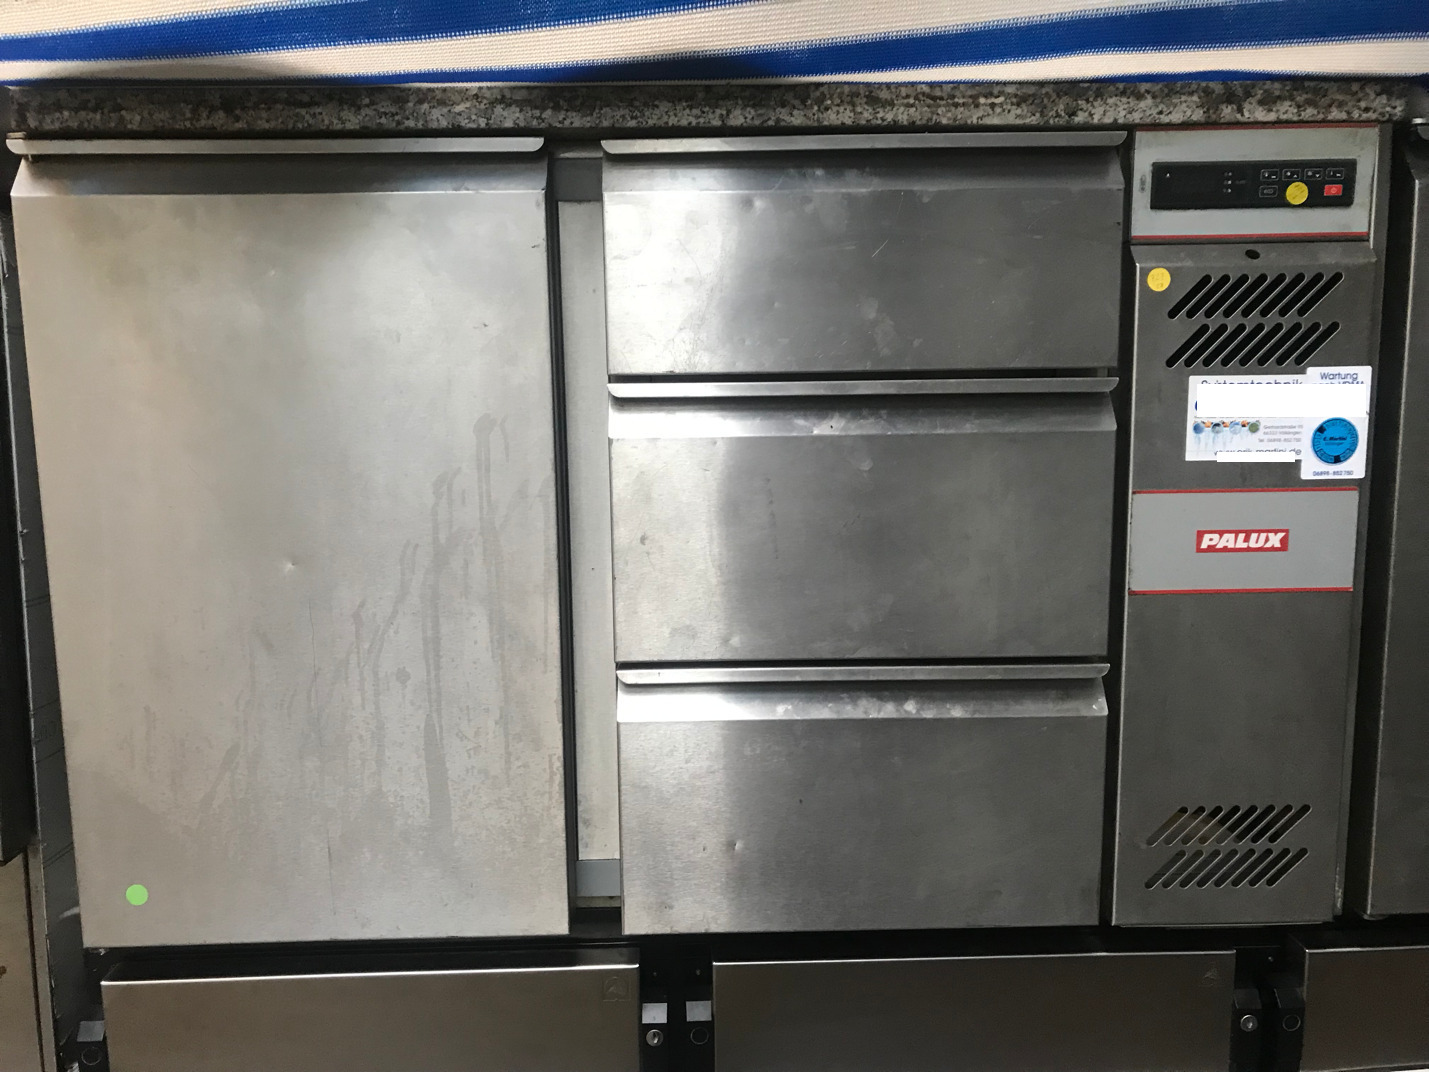 GKT 232-11 Gastro Kühltisch Edelstahl 3 Schubladen,1 Flügeltüre,Granit Arbeitsplatte-Kühlkompressor extern-nicht im Preis enthalten-aber lieferbar